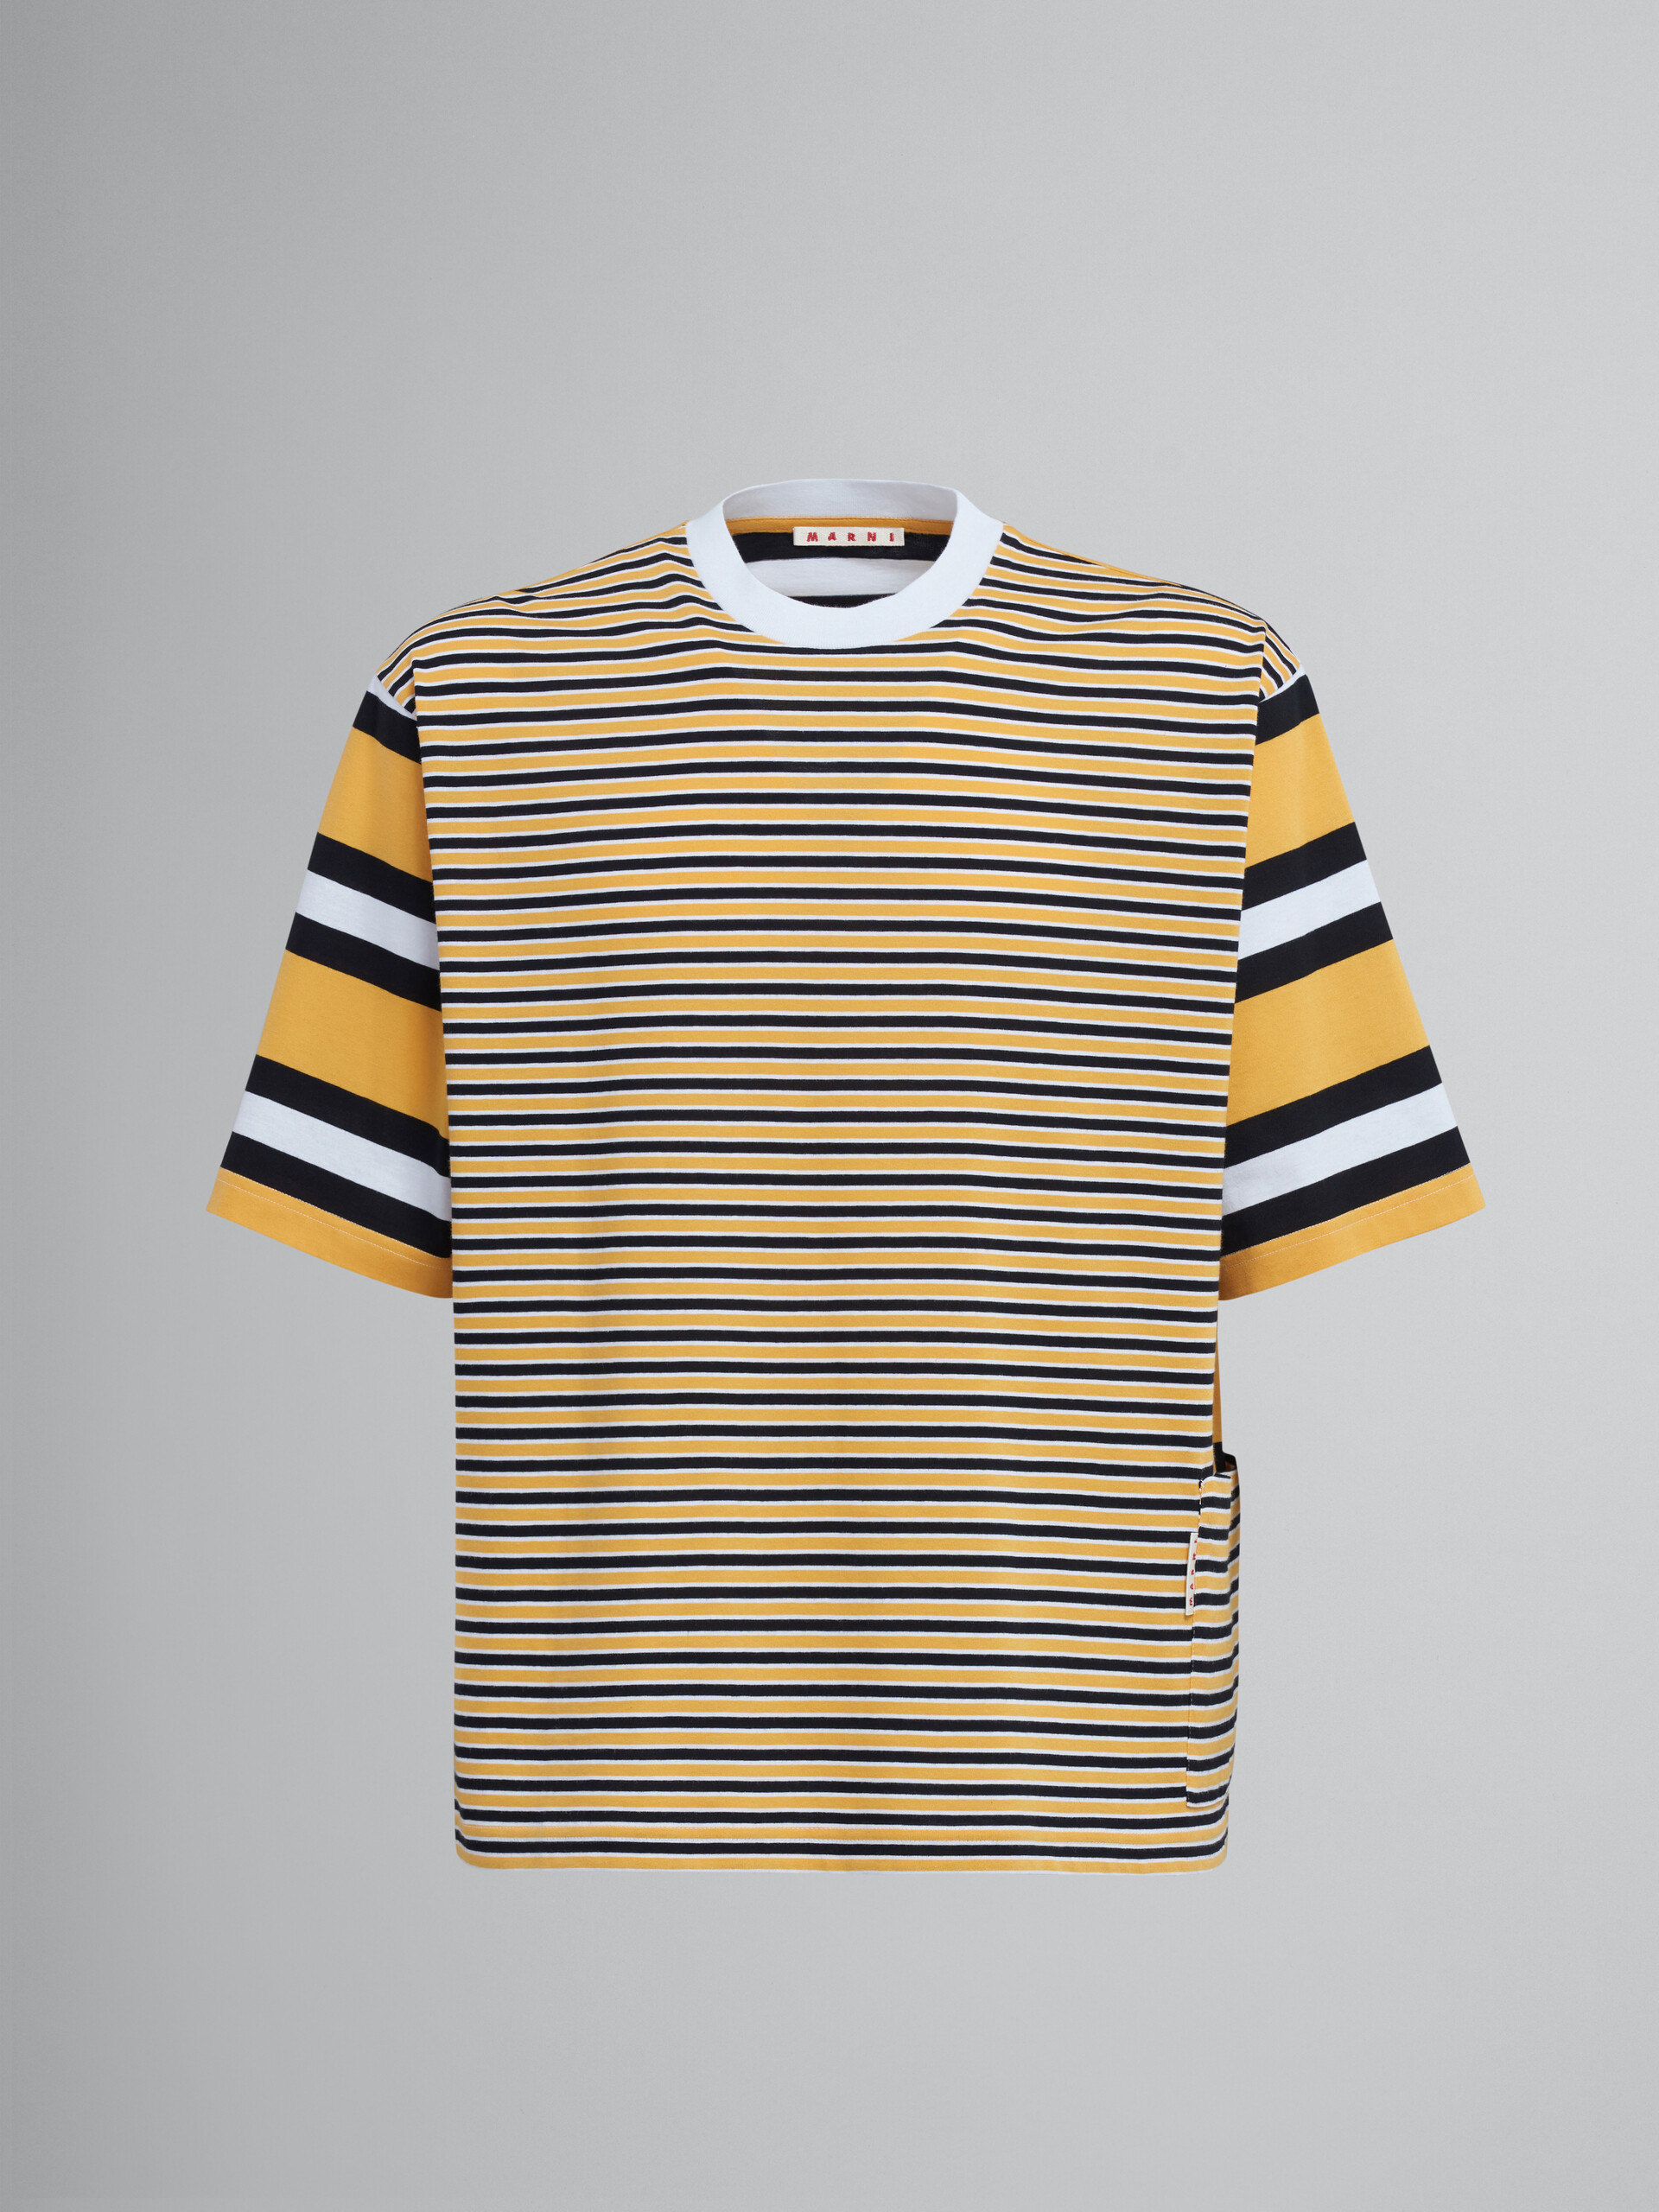 Yellow striped cotton jersey crewneck T-shirt - T-shirts - Image 1